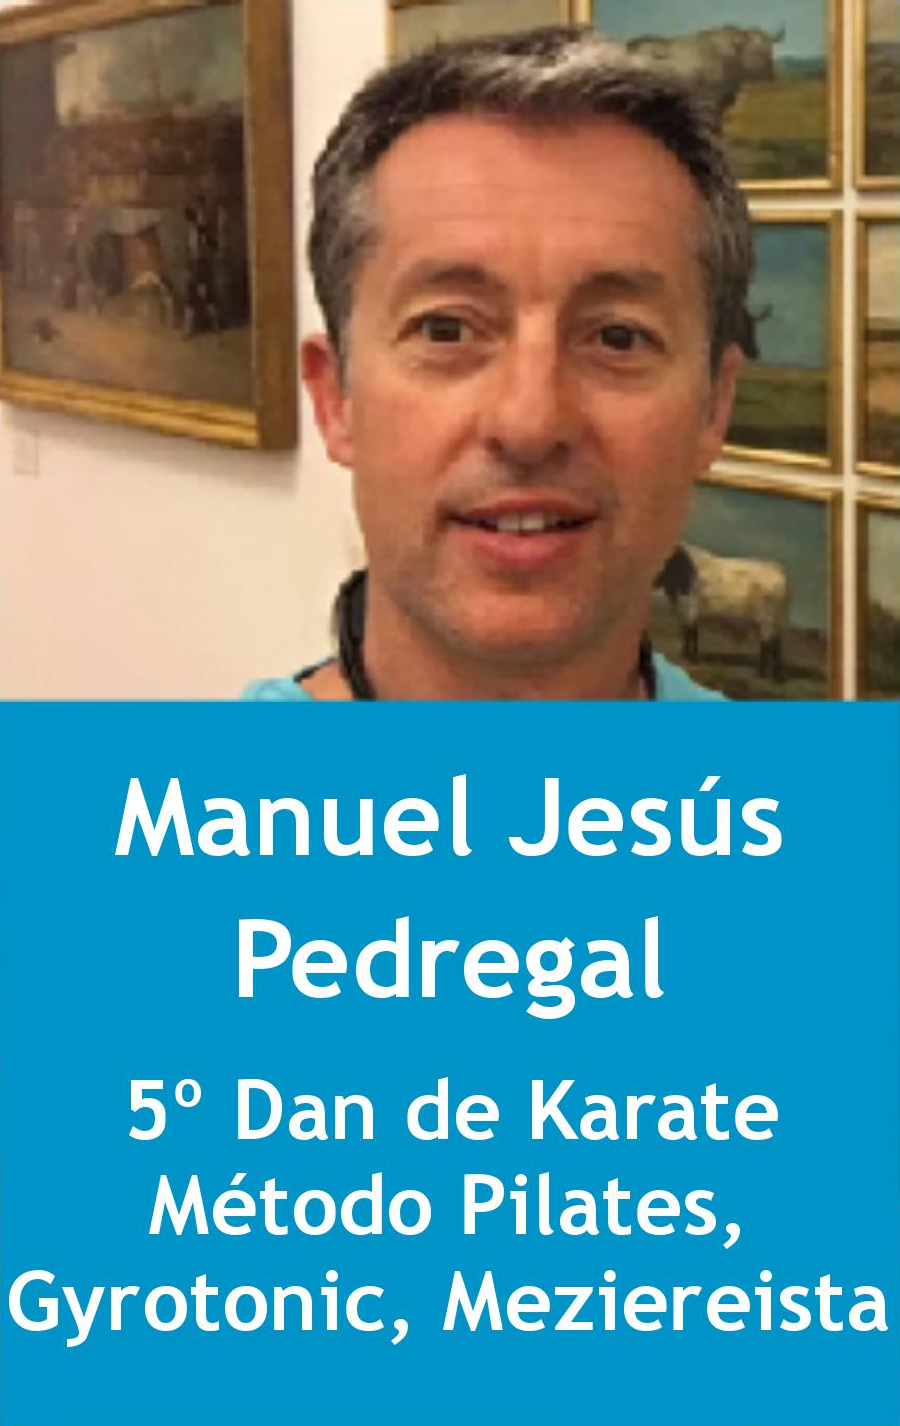 Manuel Jesús Pedregal Canga